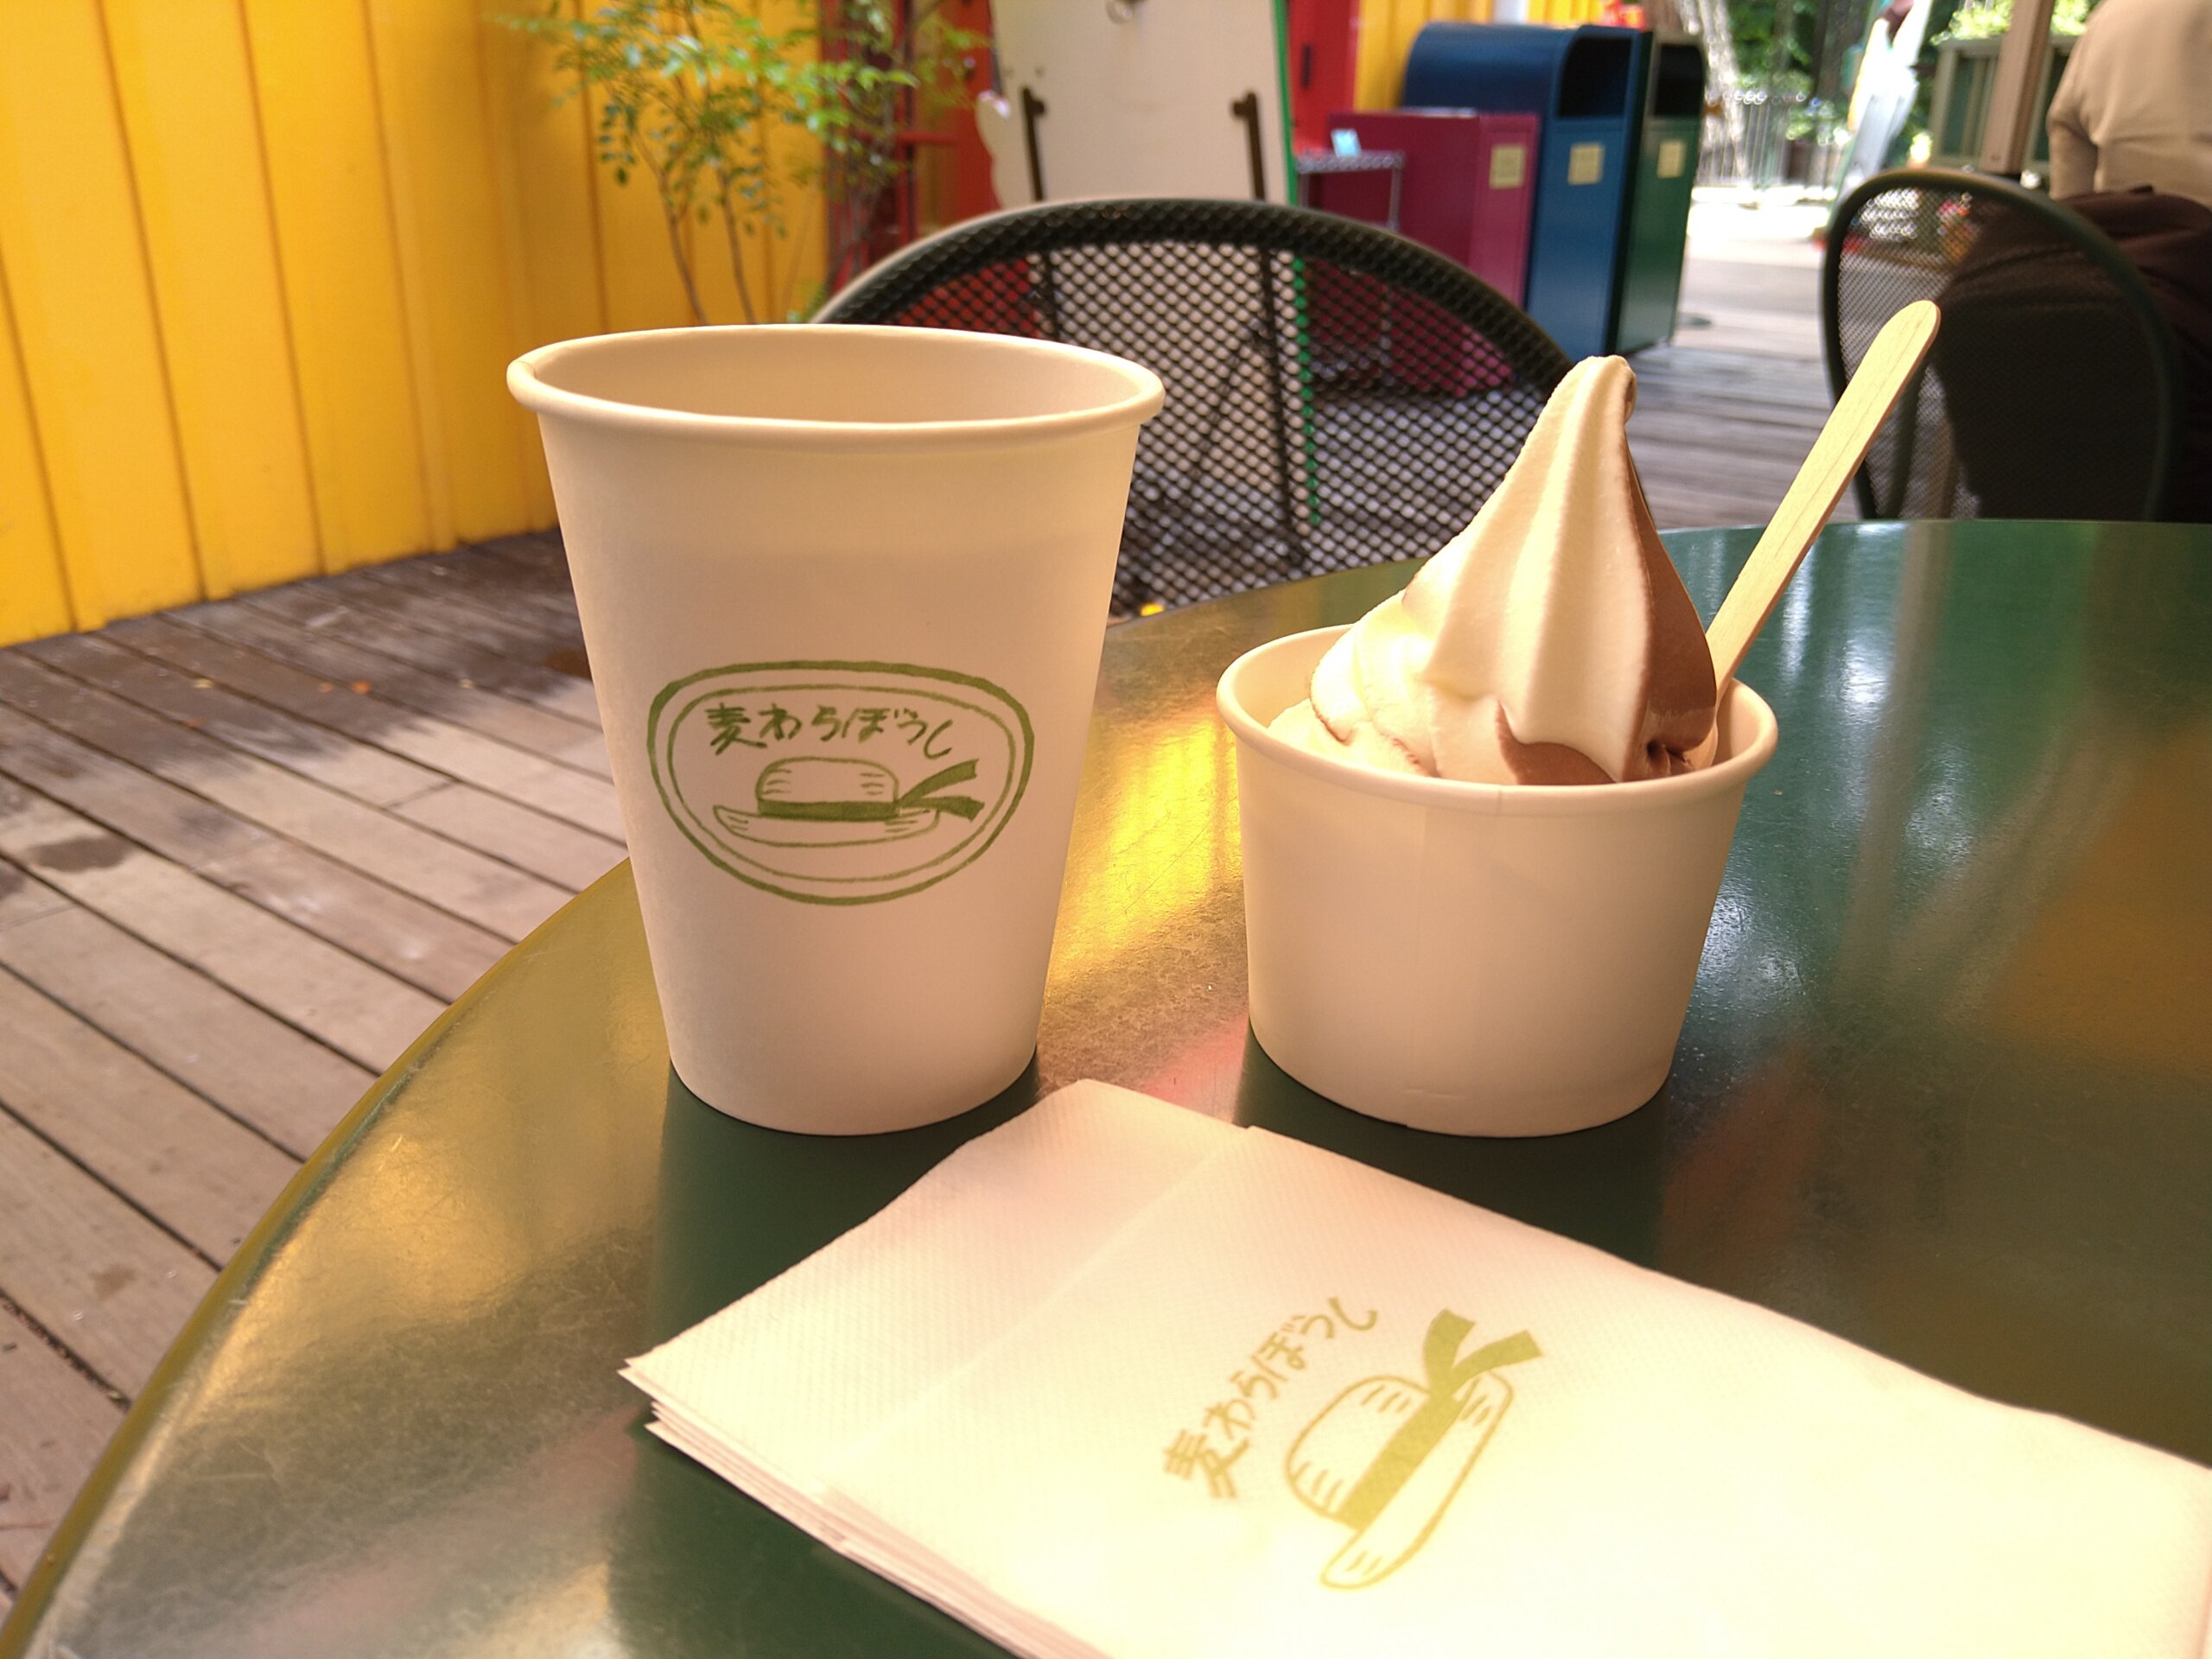 三鷹の森ジブリ美術館の館内にあるカフェ「麦わらぼうし」のデッキで提供されている「森のソフトクリーム」（380円、写真はチョコとミルクのミックス）と「麦茶」（100円）